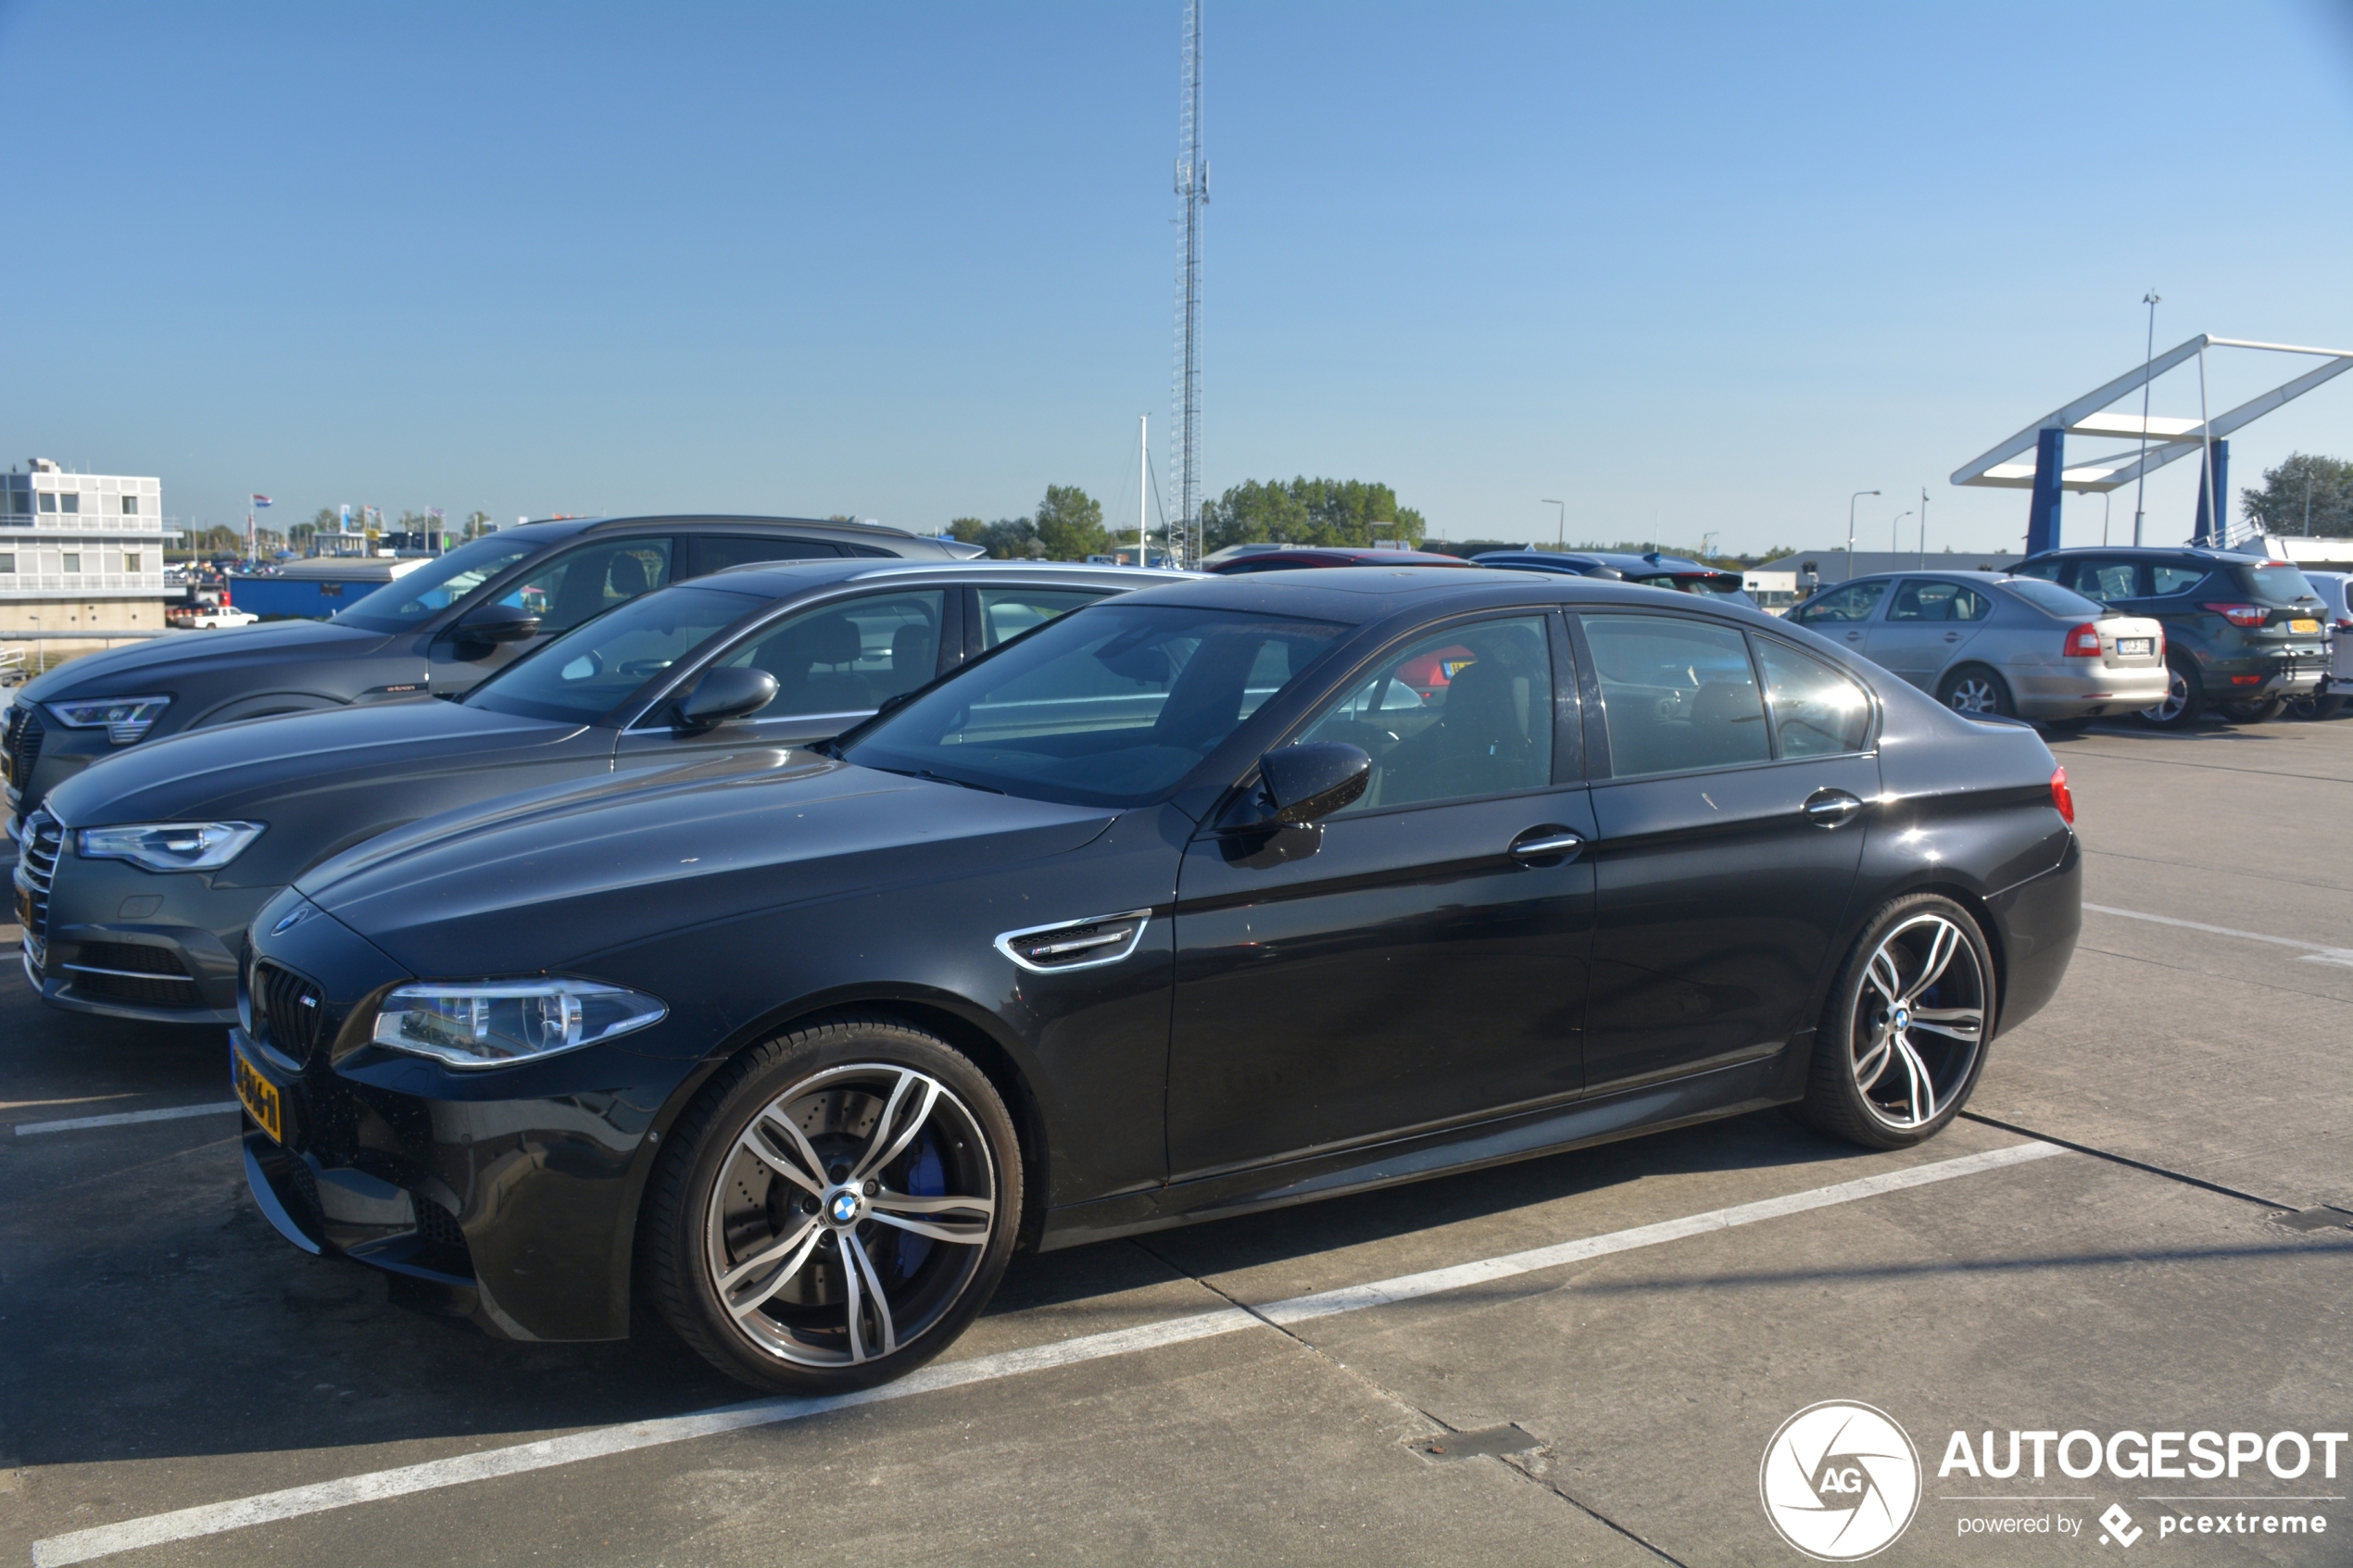 BMW M5 F10 2014 - 21 September 2020 - Autogespot